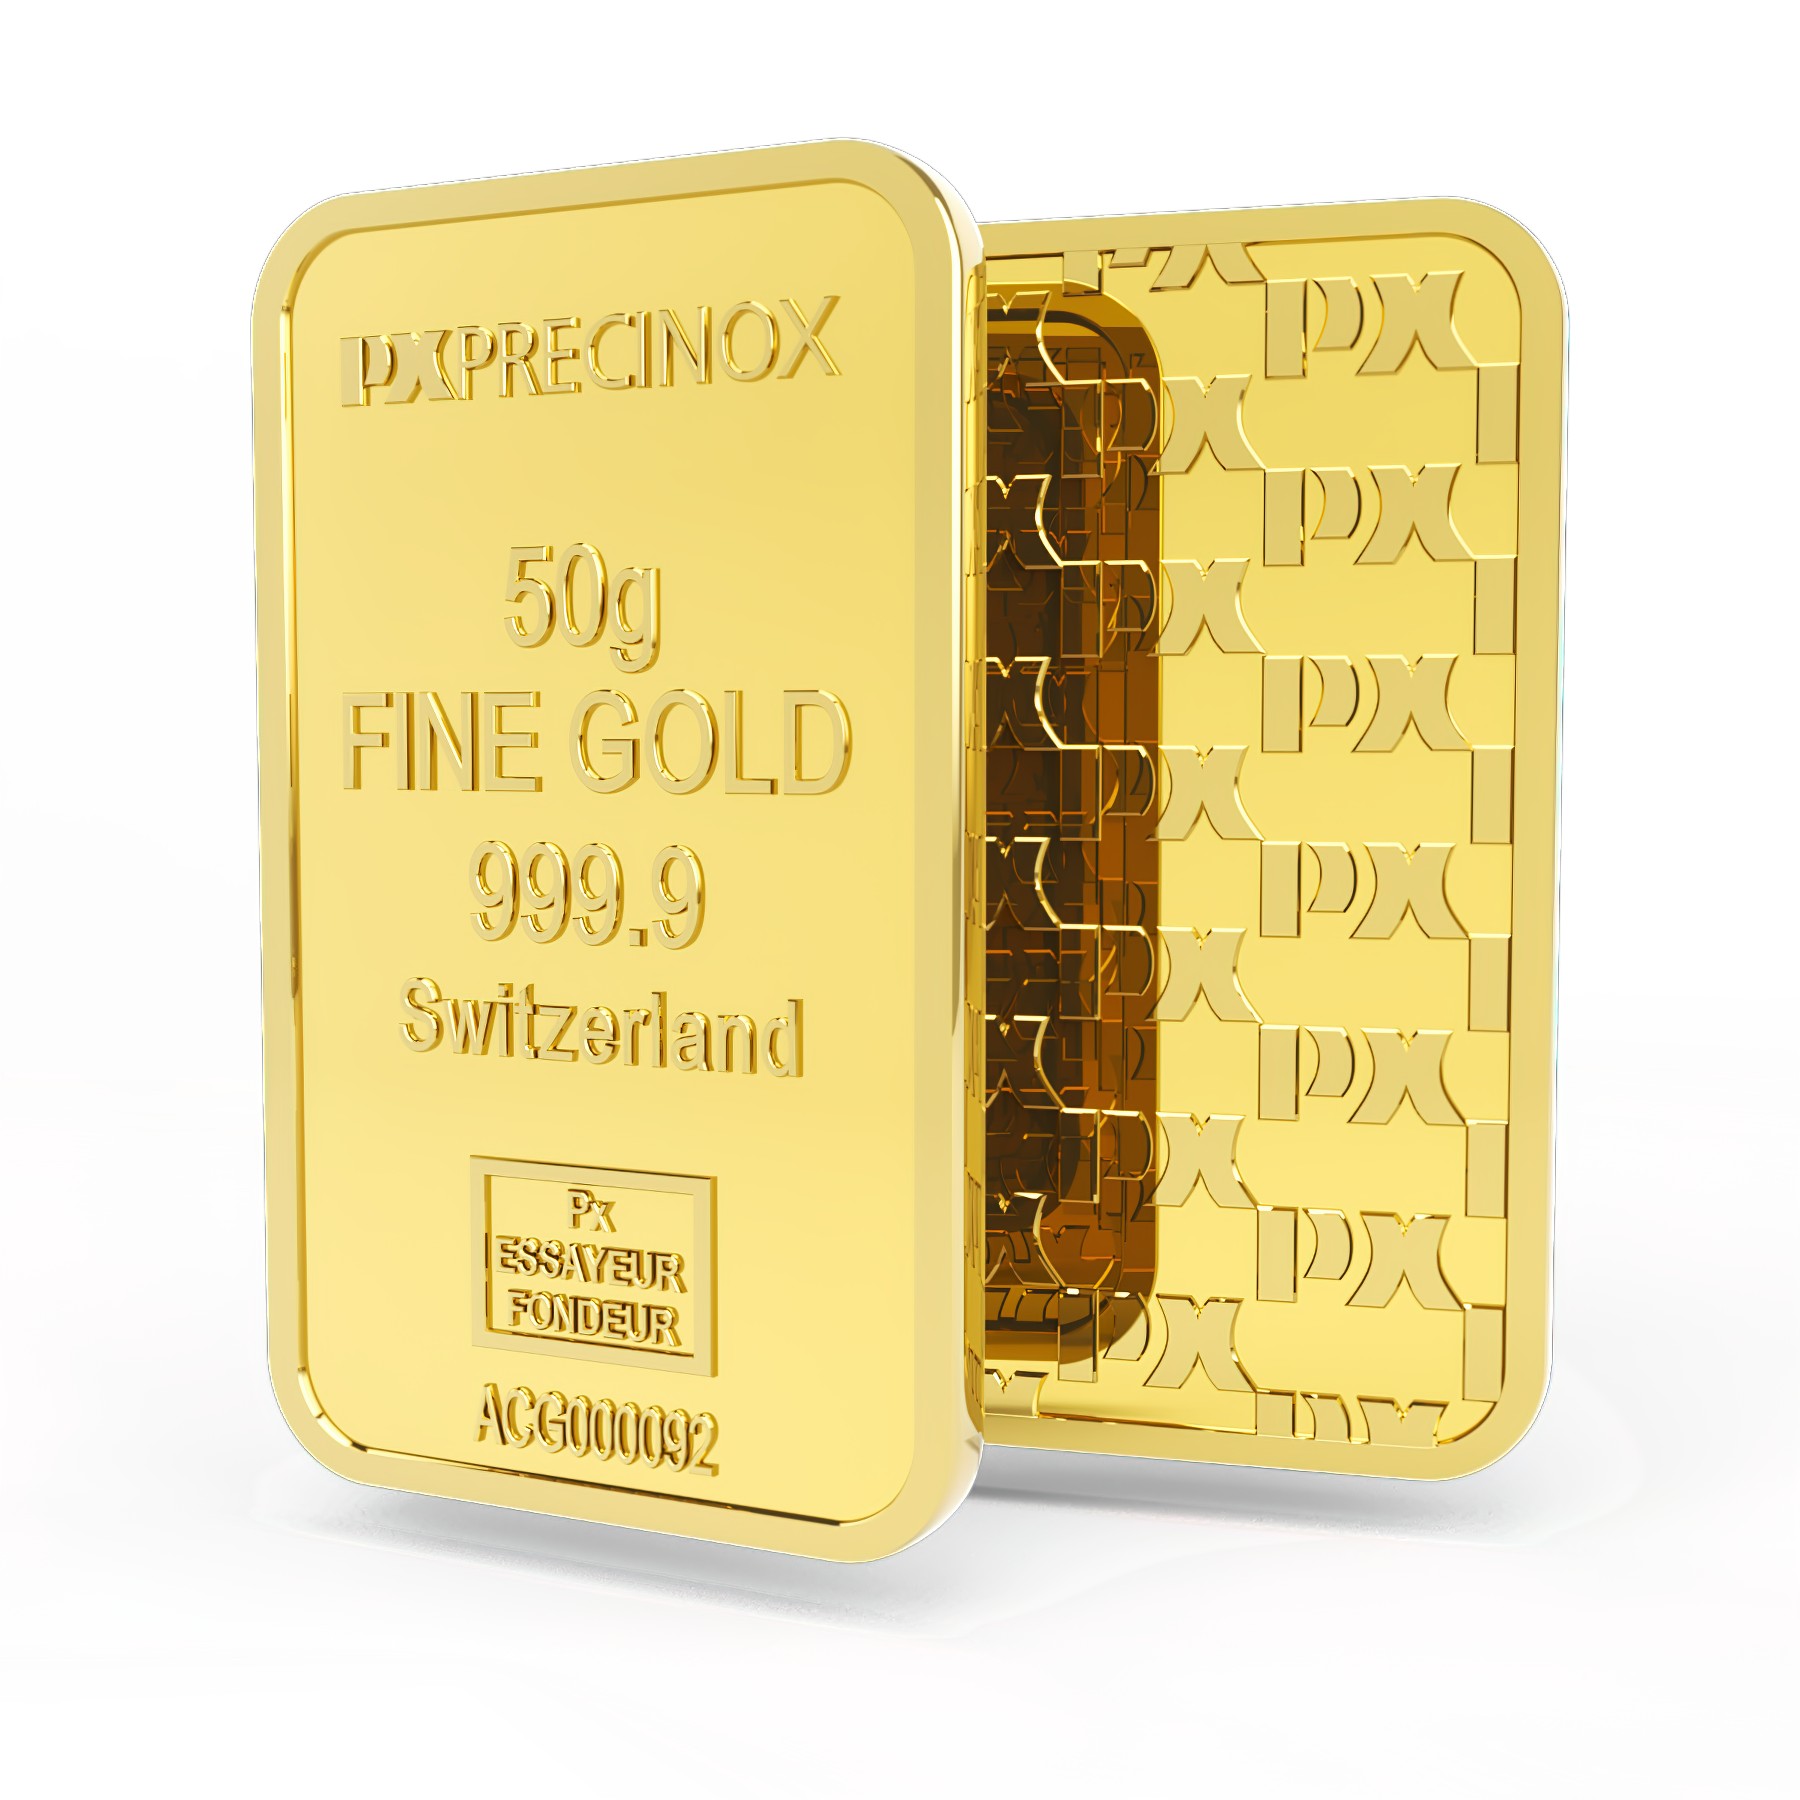 Sztabka złota 50g, Szwajcaria, Fine Gold 999.9